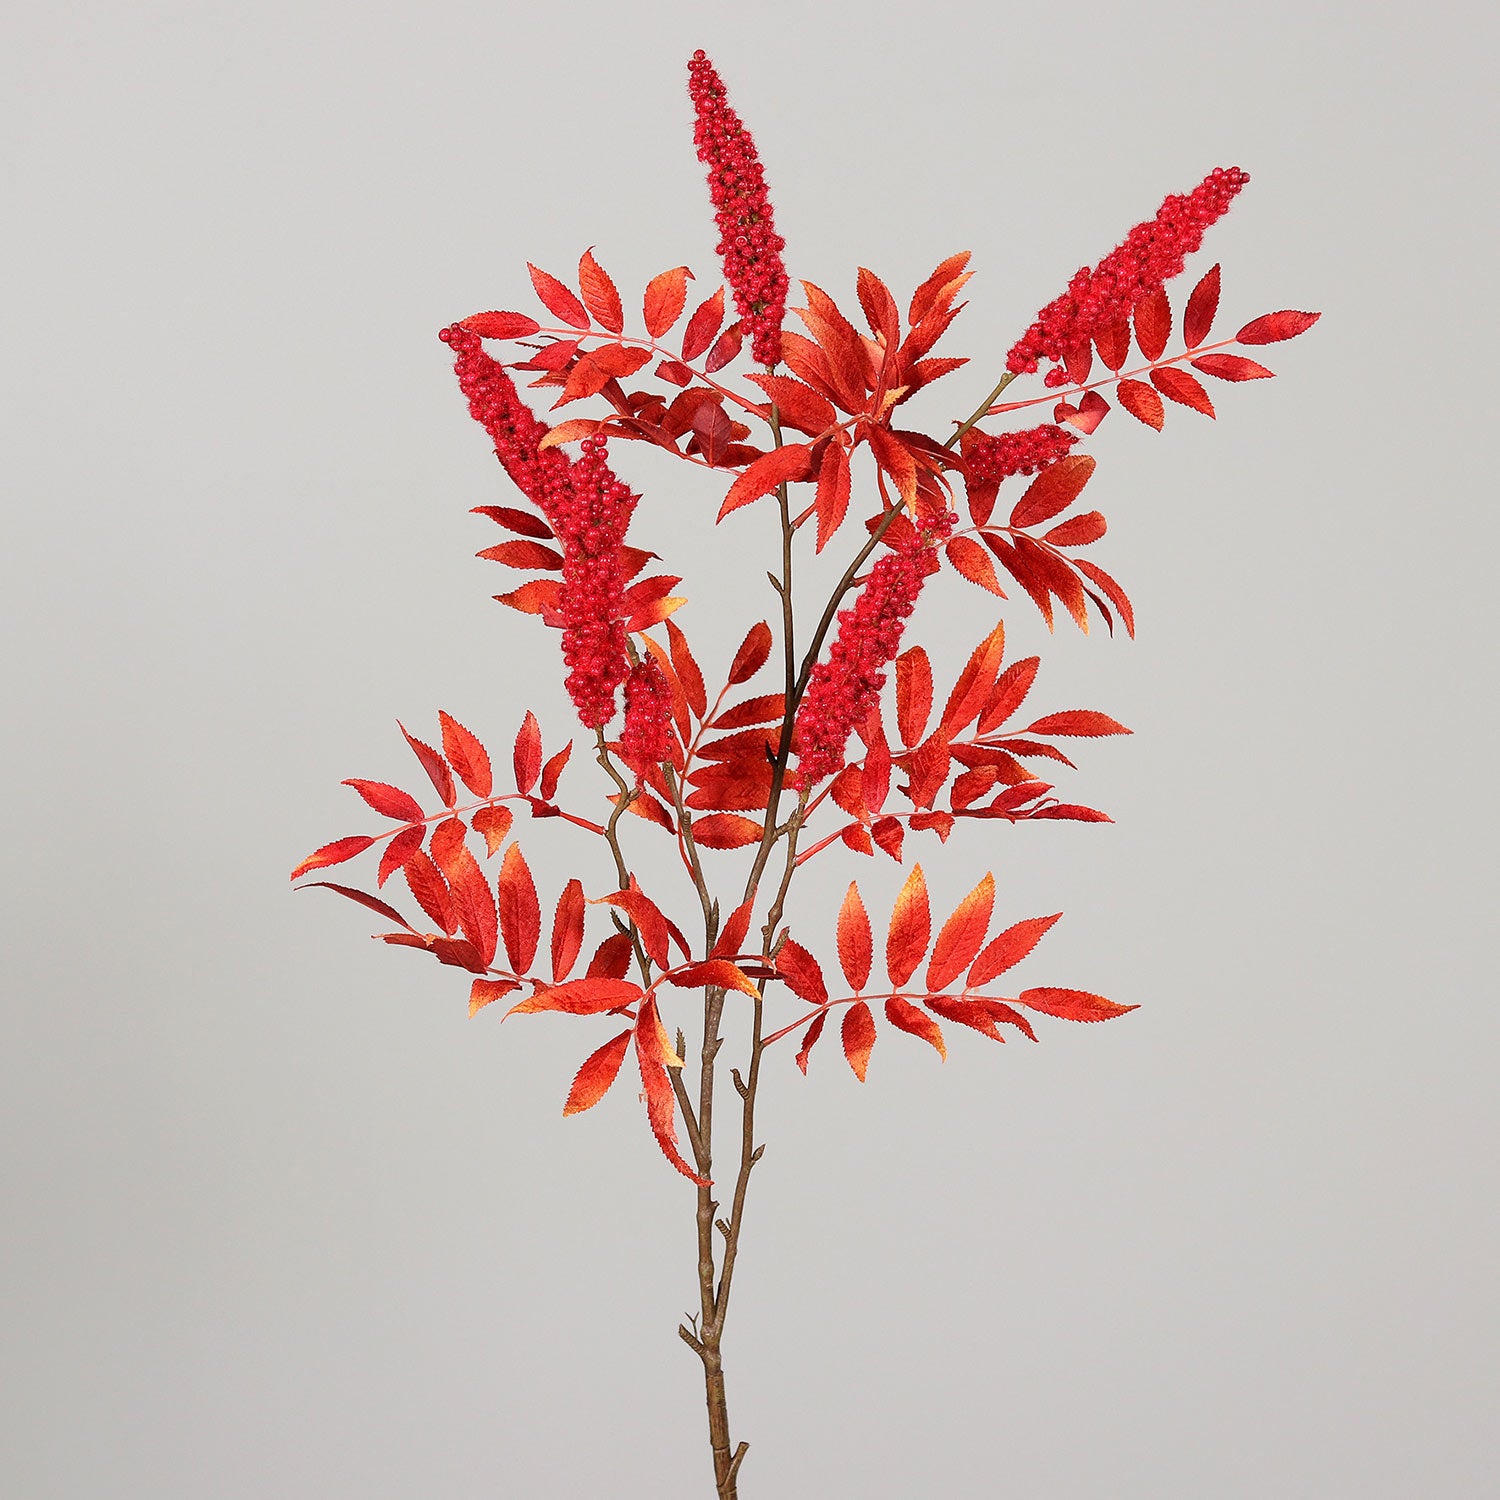 Piros színű mű őszi bogyós lombhullató ág-